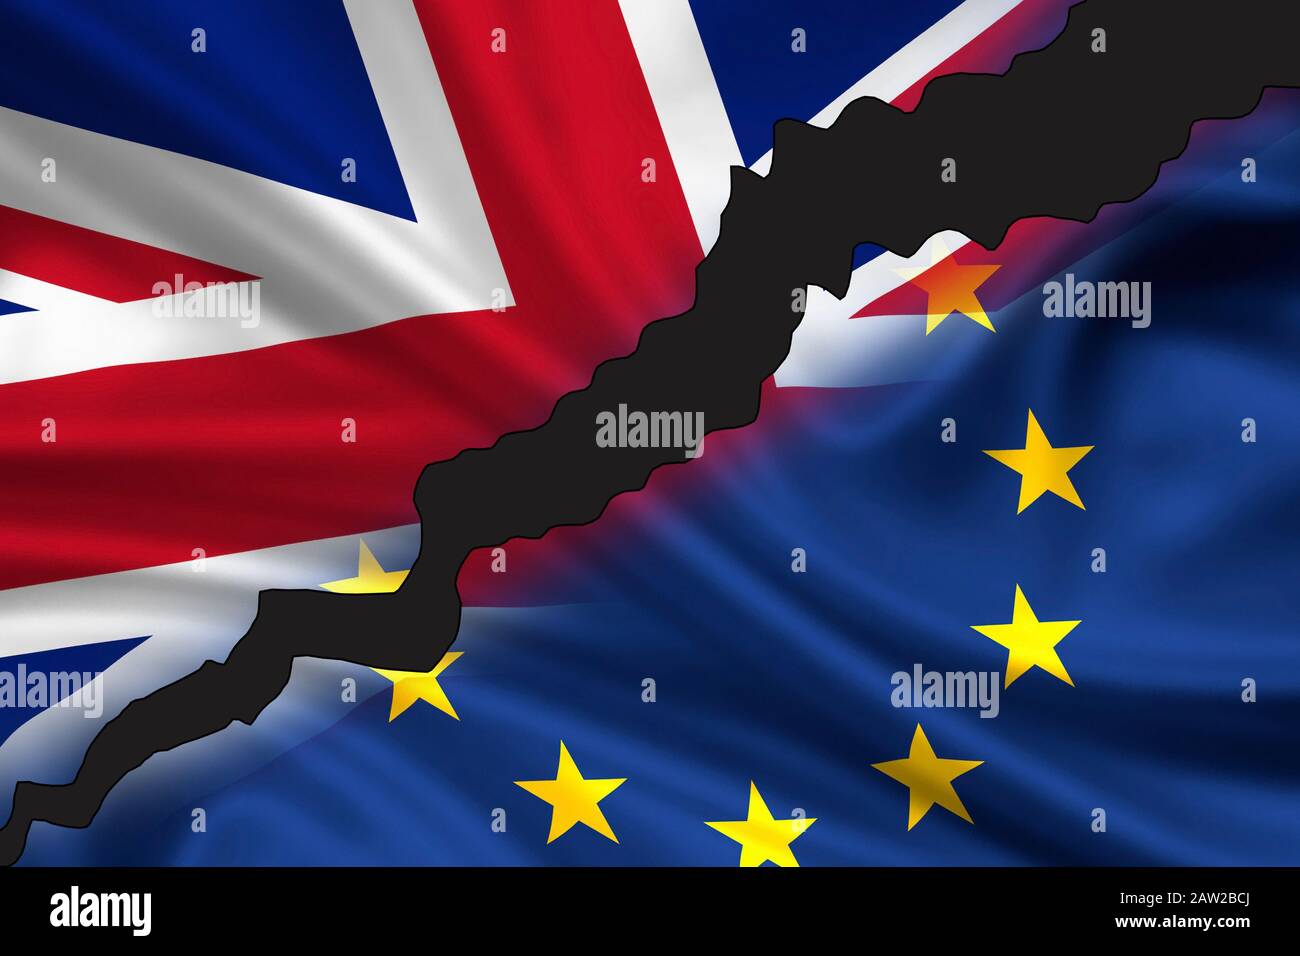 Londres, Royaume-Uni - 24 juin 2016 : drapeau brisé / divisé de la Grande-Bretagne (Union Jack) et de l'Europe symbolisant la sortie du Royaume-Uni de l'Europe (Brexi Banque D'Images